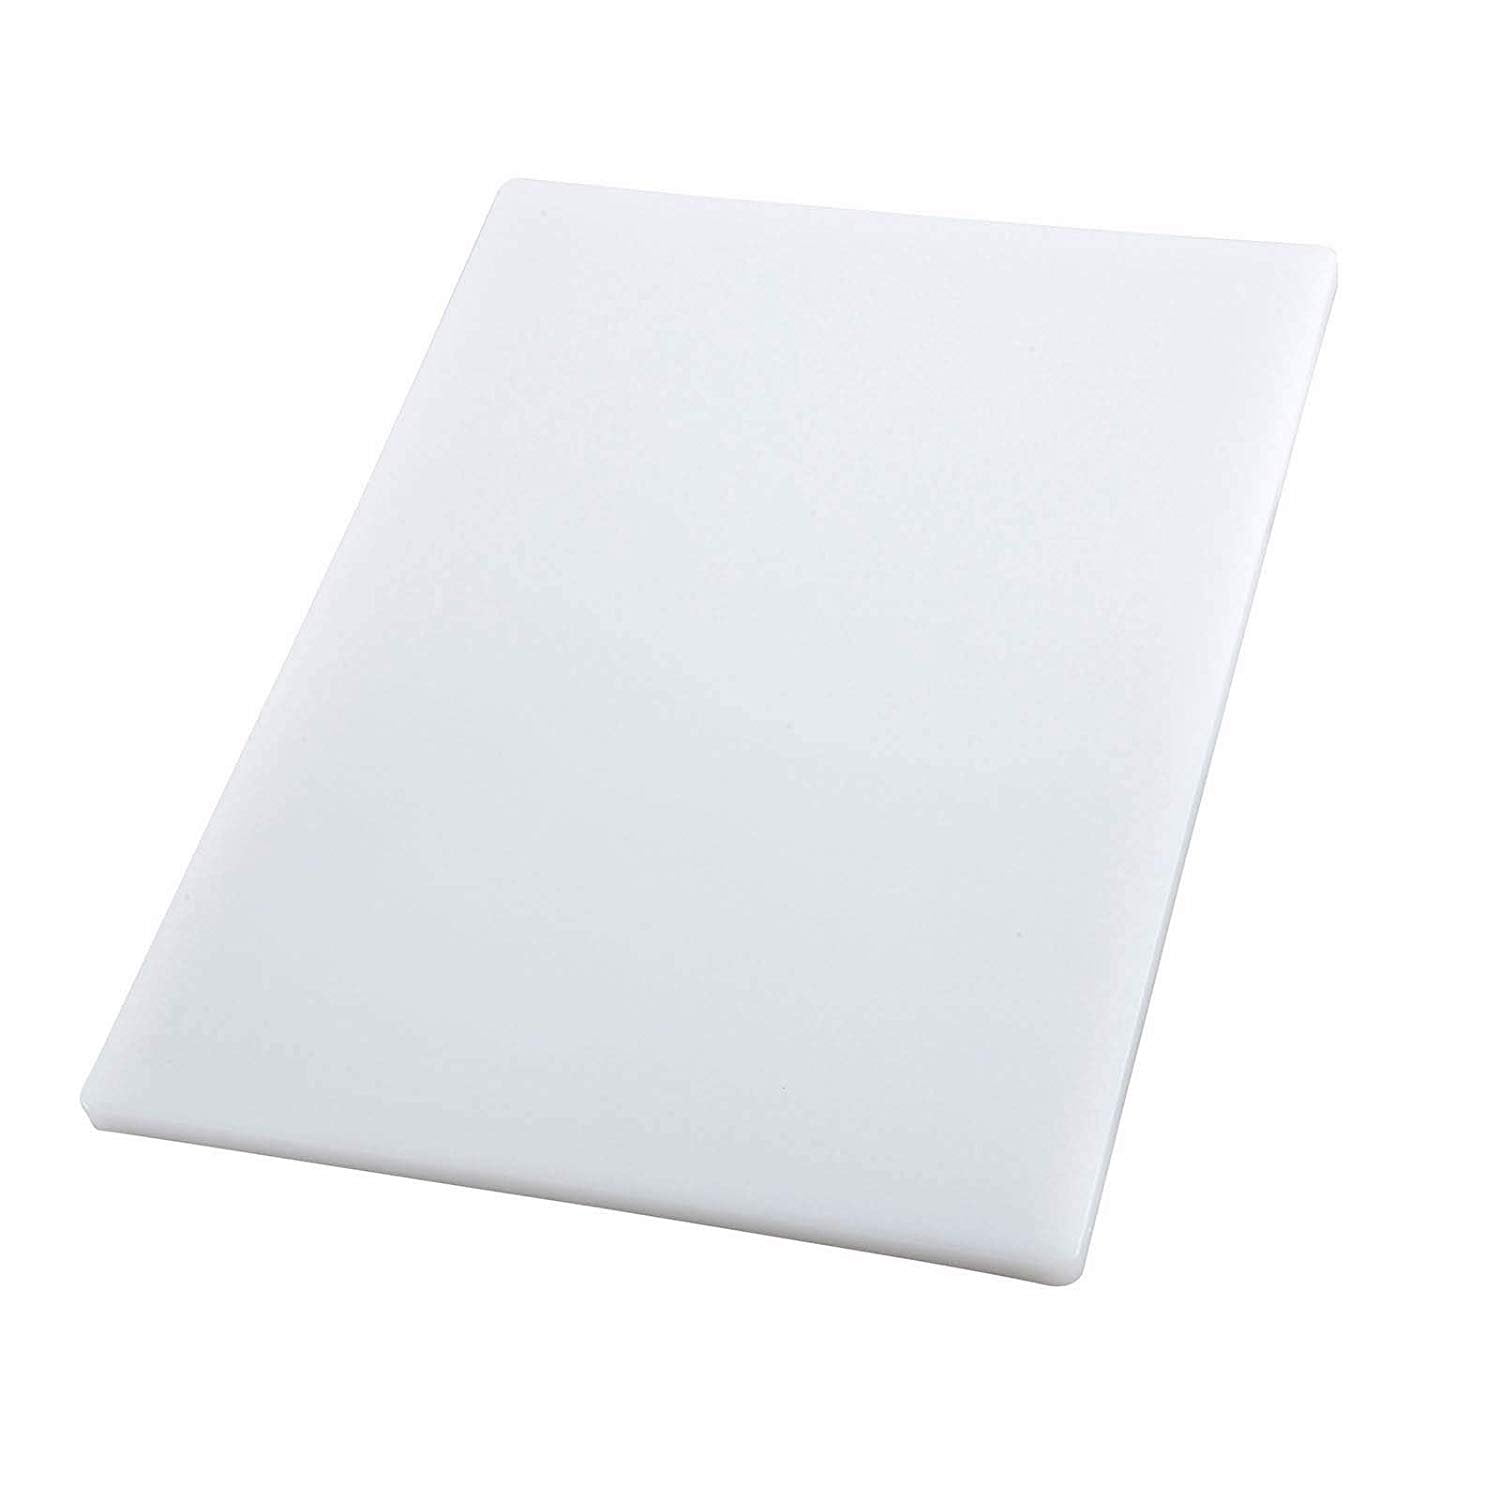 White choppingcutting board 24 x 18 x 3/4" haccp/nsf 